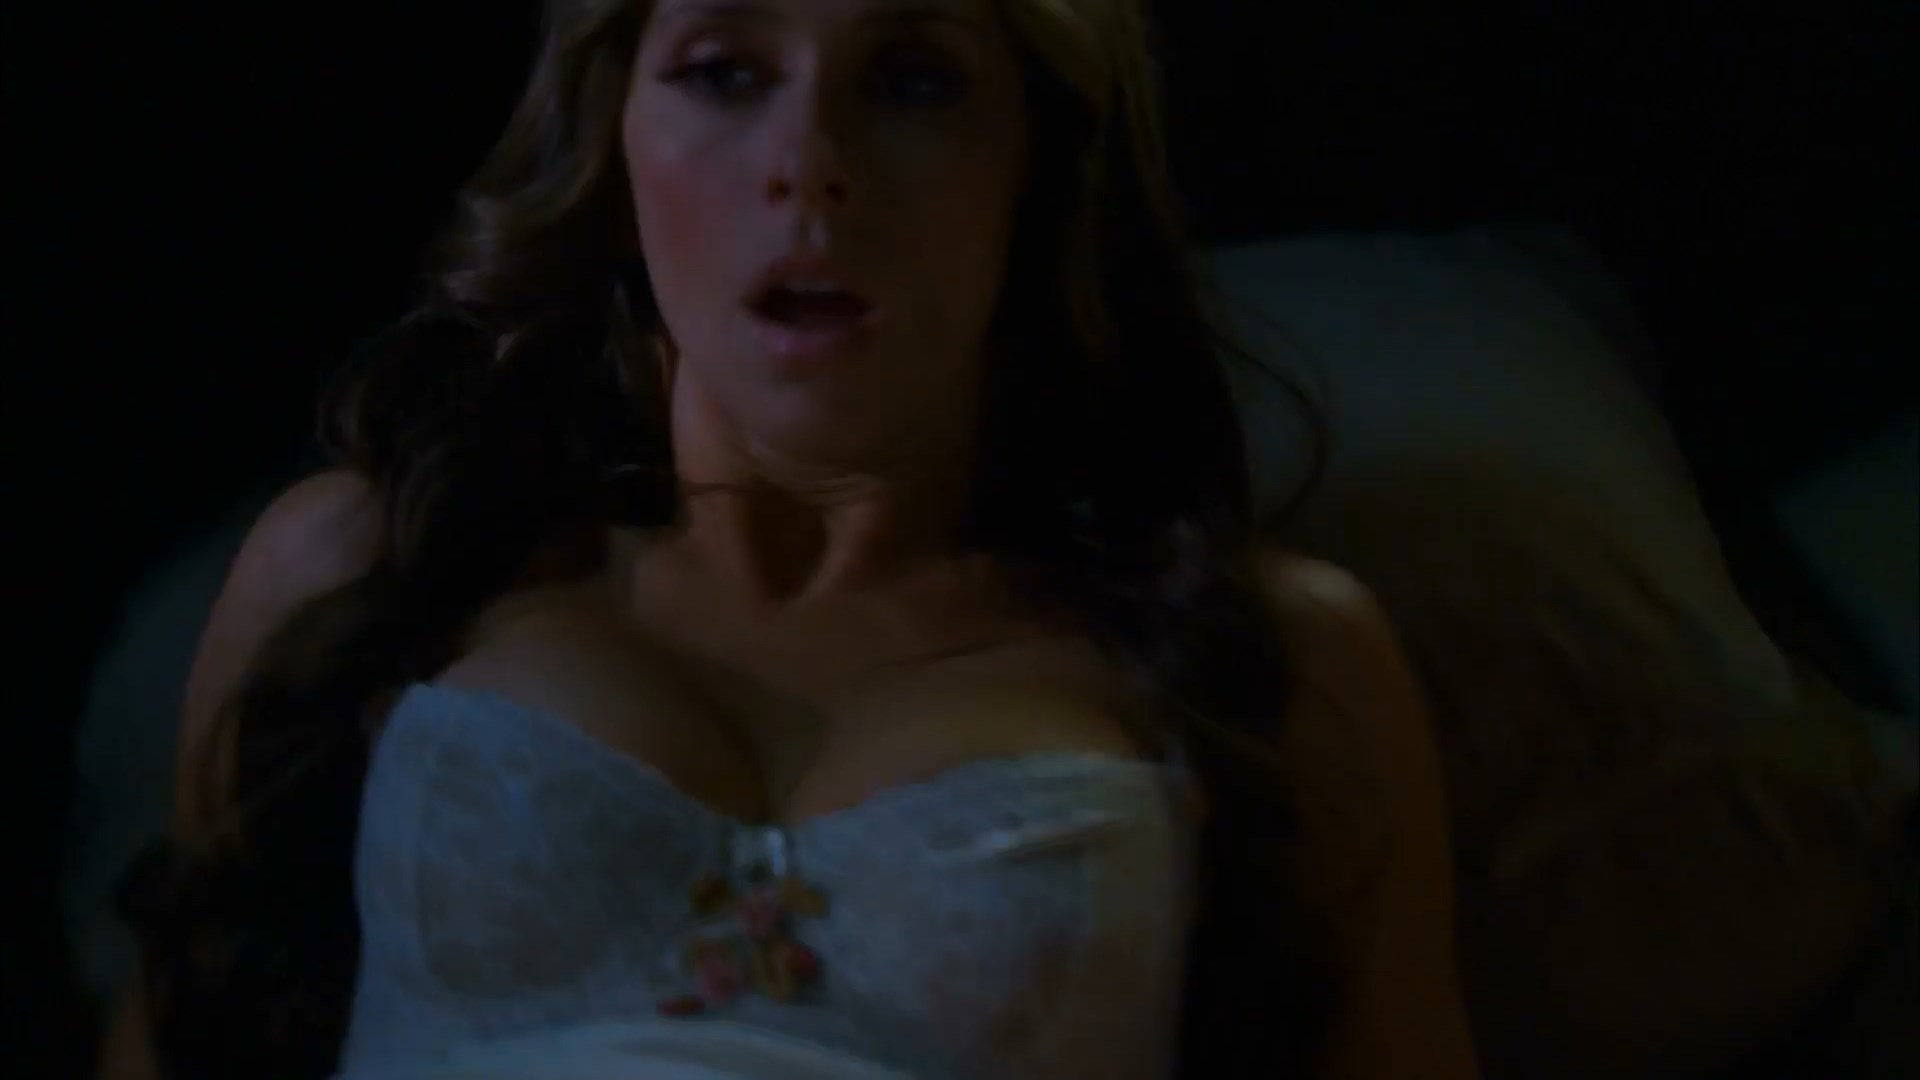 Lesbian Ghost Whisperer Porn - Watch Online - Jennifer Love Hewitt - Ghost Whisperer s05e09 ...